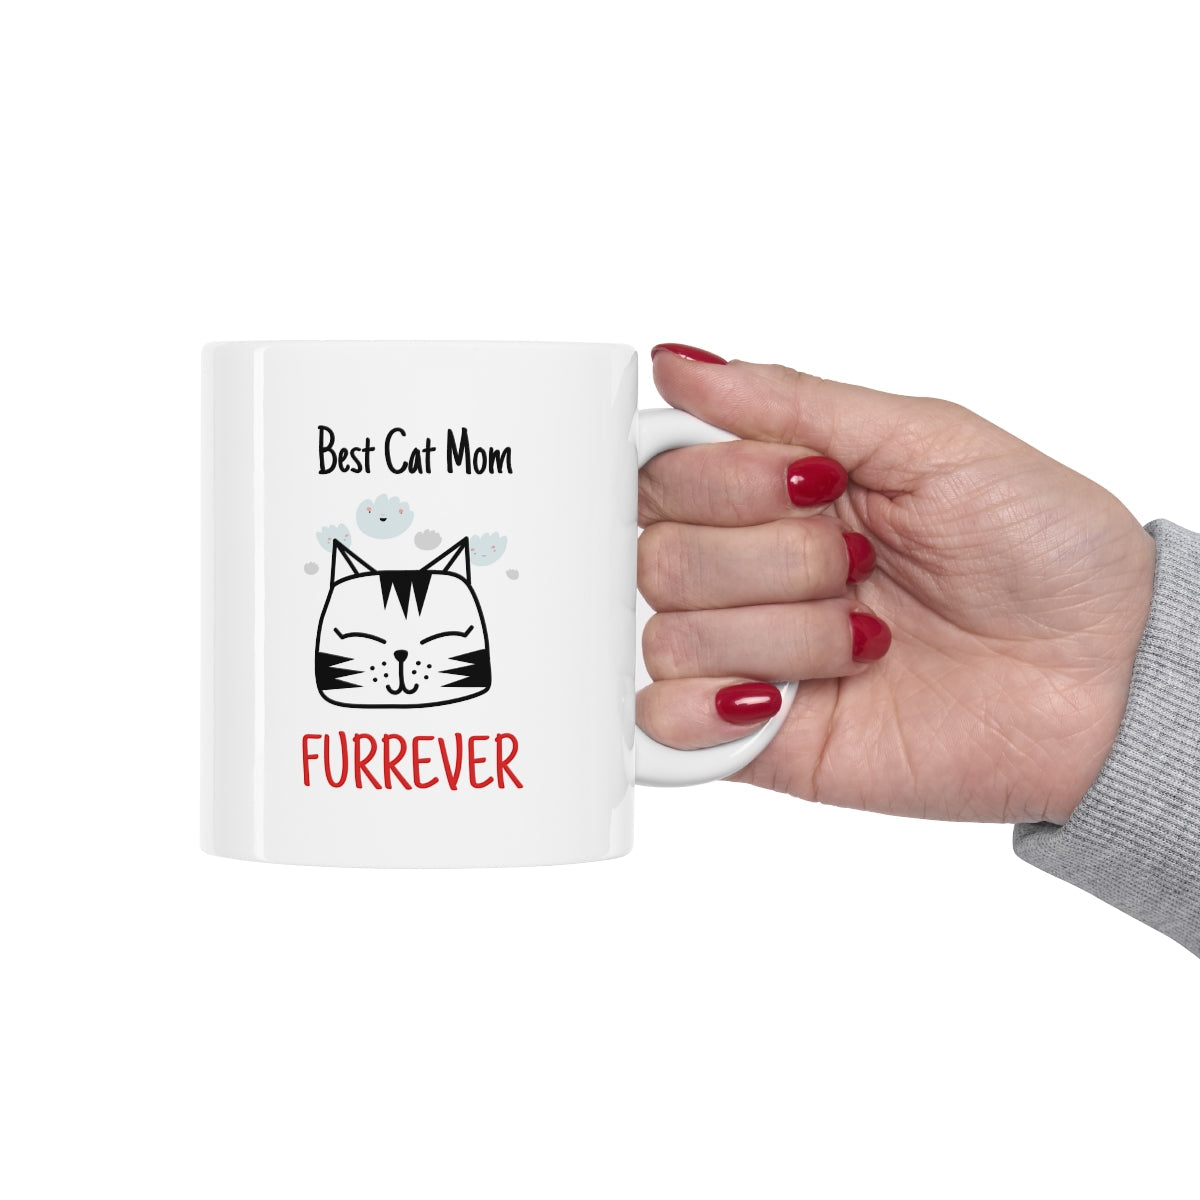 Best Cat Mom Furrever Mug